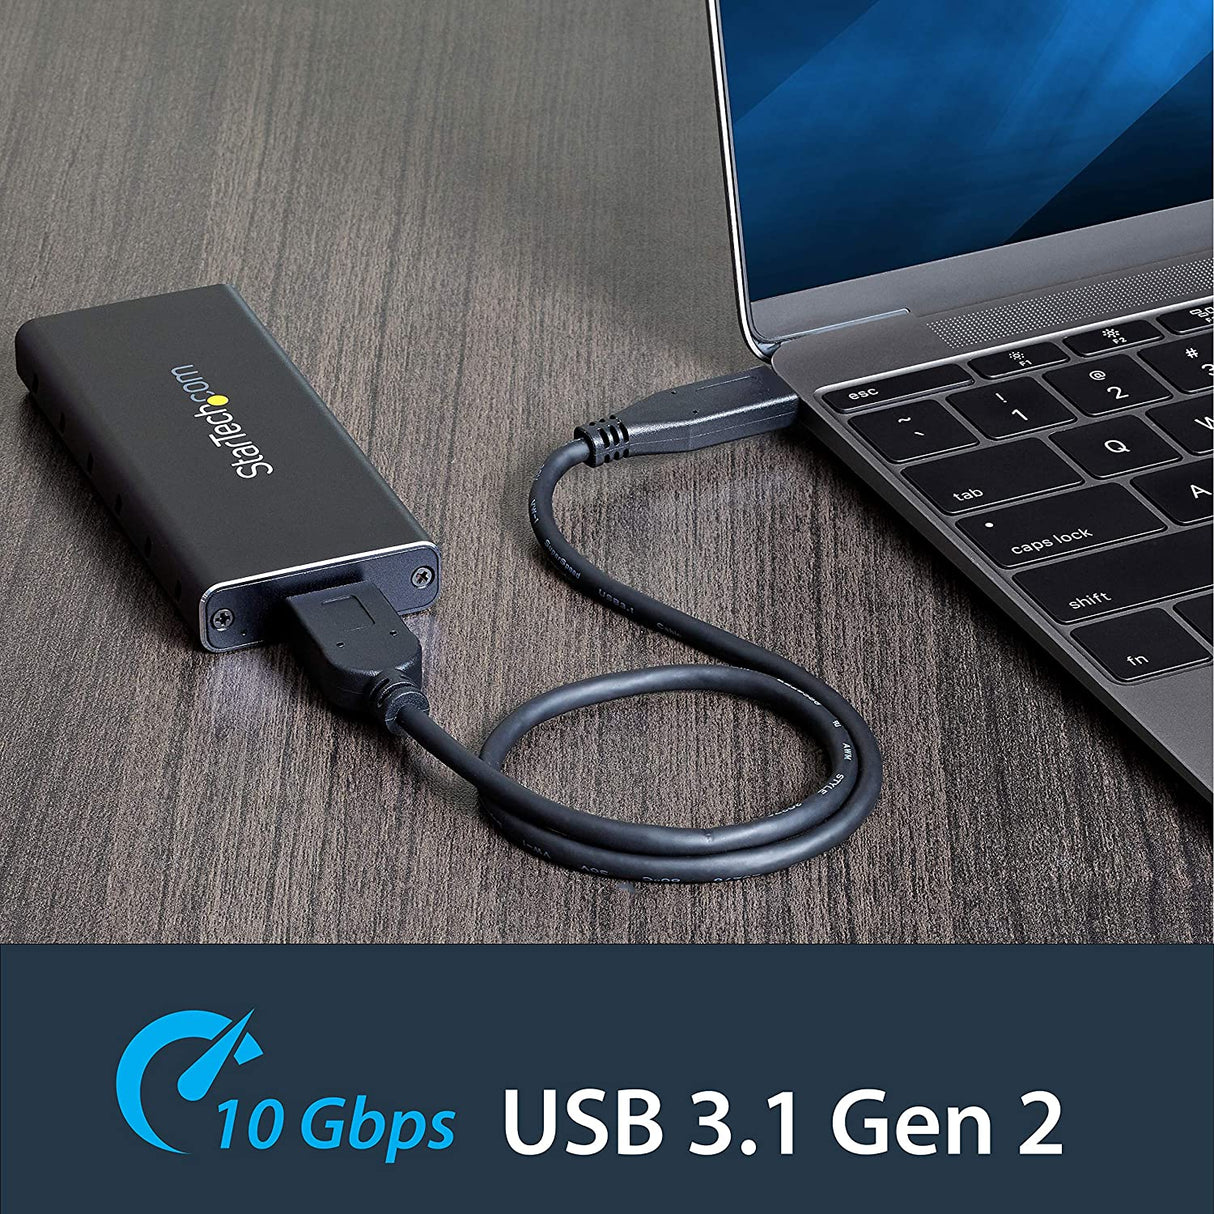 StarTech.com Boîtier externe pour SSD M2 SATA avec câble USB-C